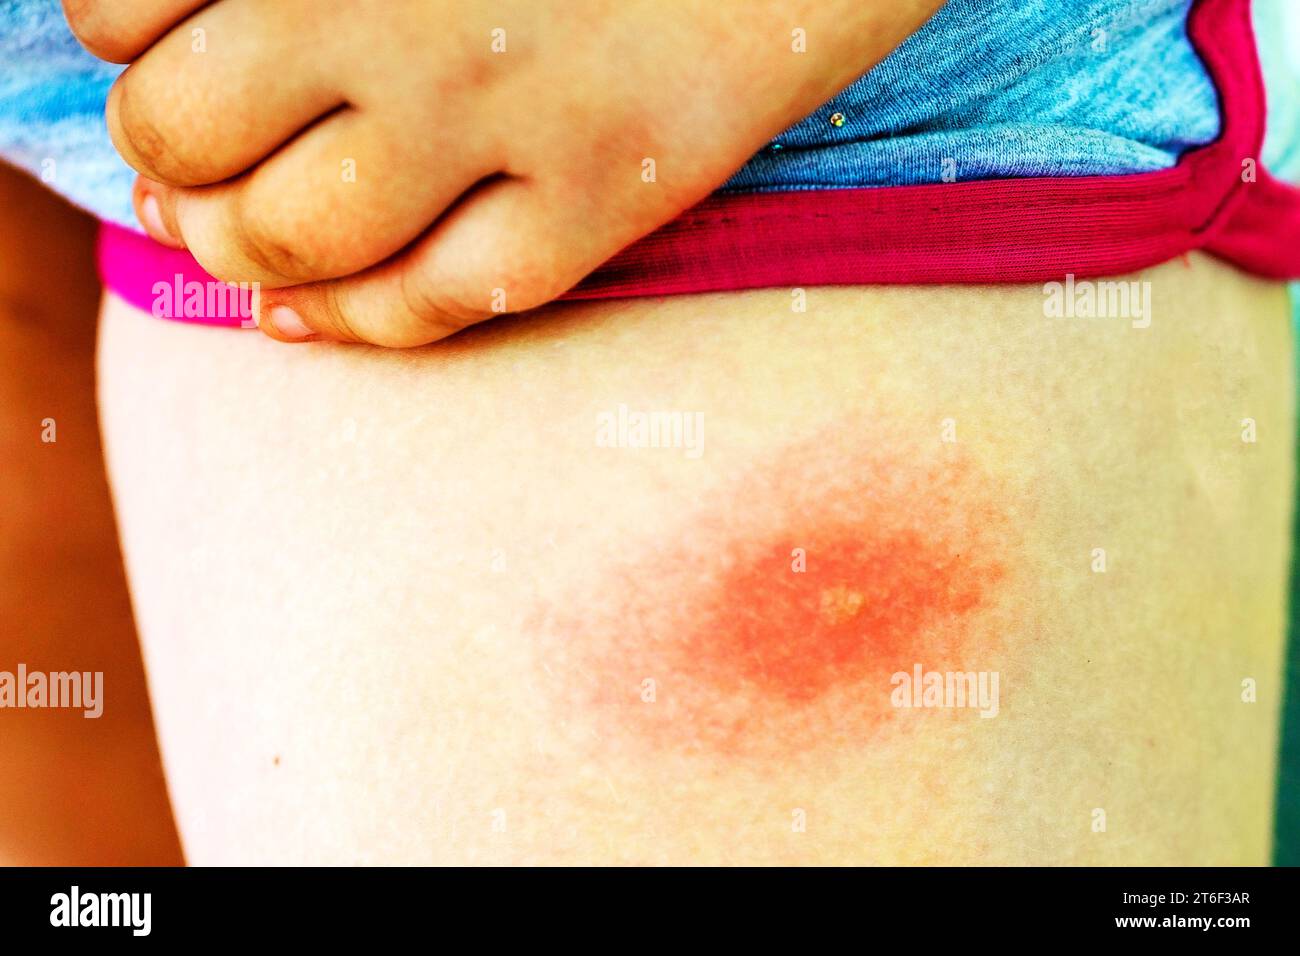 La piqûre de tique sur la jambe d'un enfant, gros plan. Allergie aux piqûres d'insectes. Plaie et conséquences après piqûre de moustique. Peau acnéique Banque D'Images